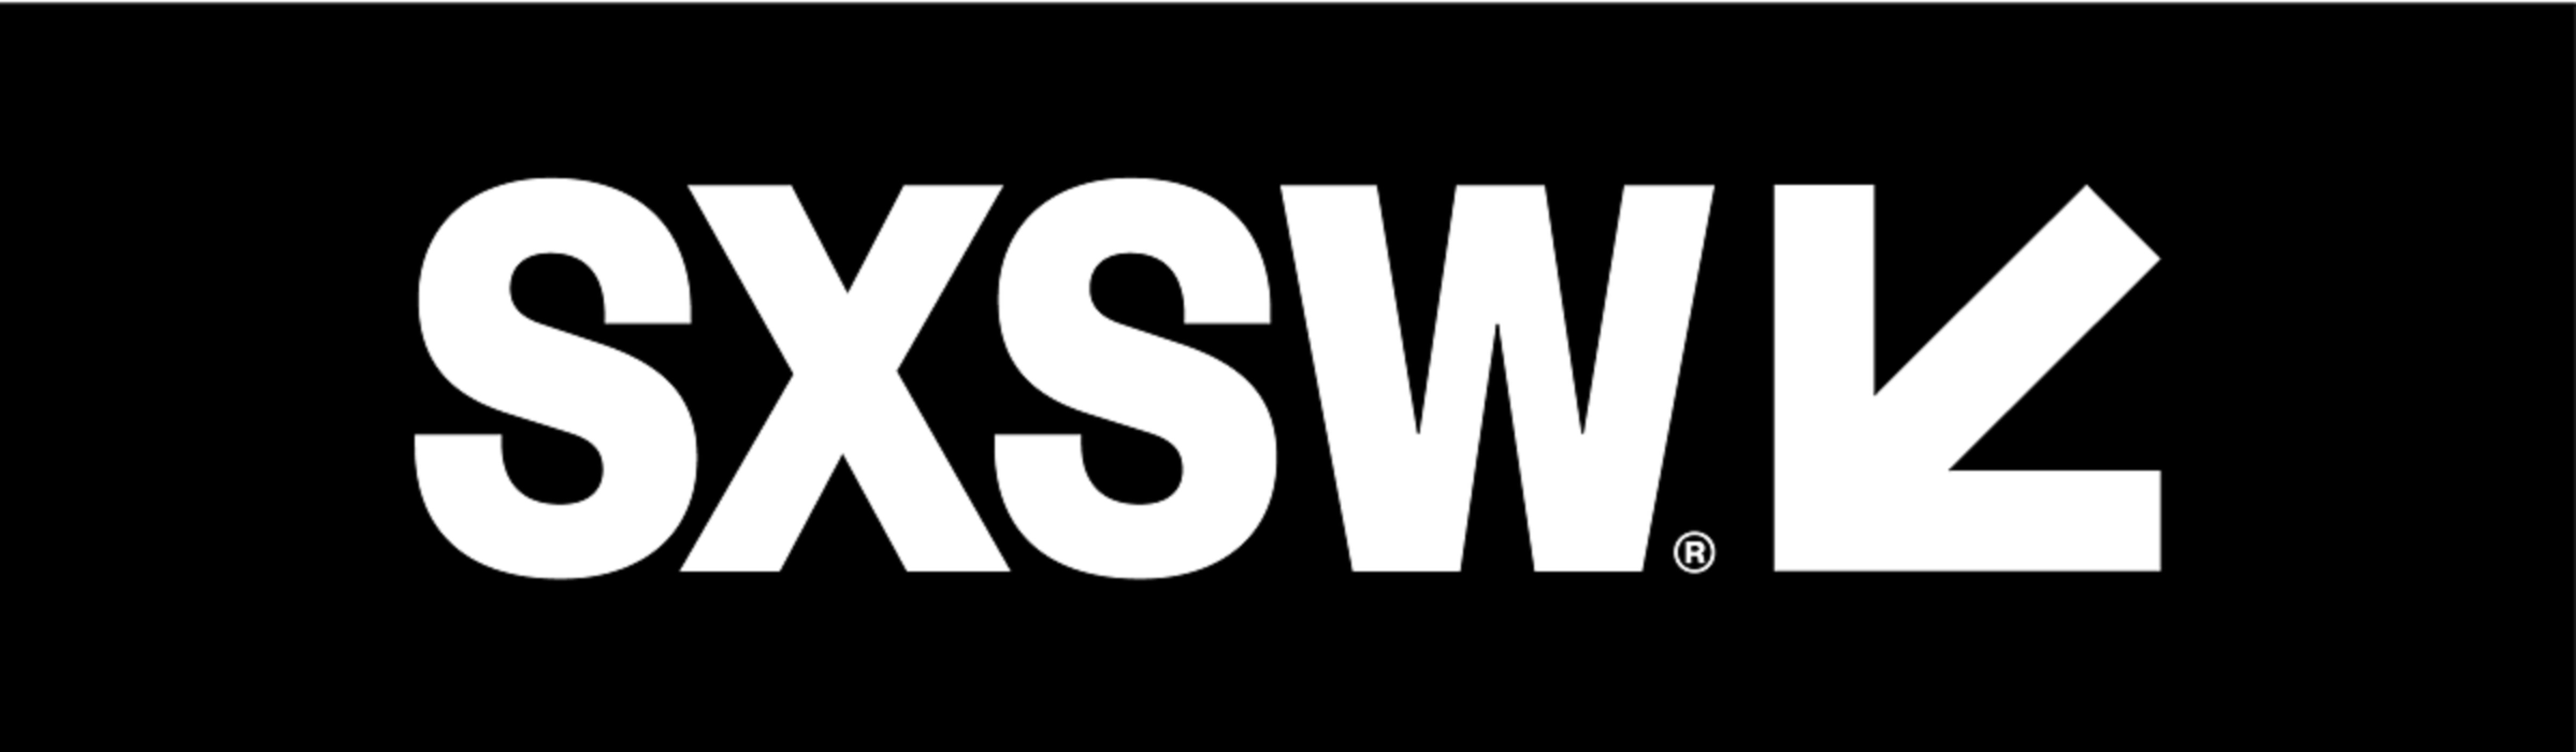 SXSW Announces SXSW Online